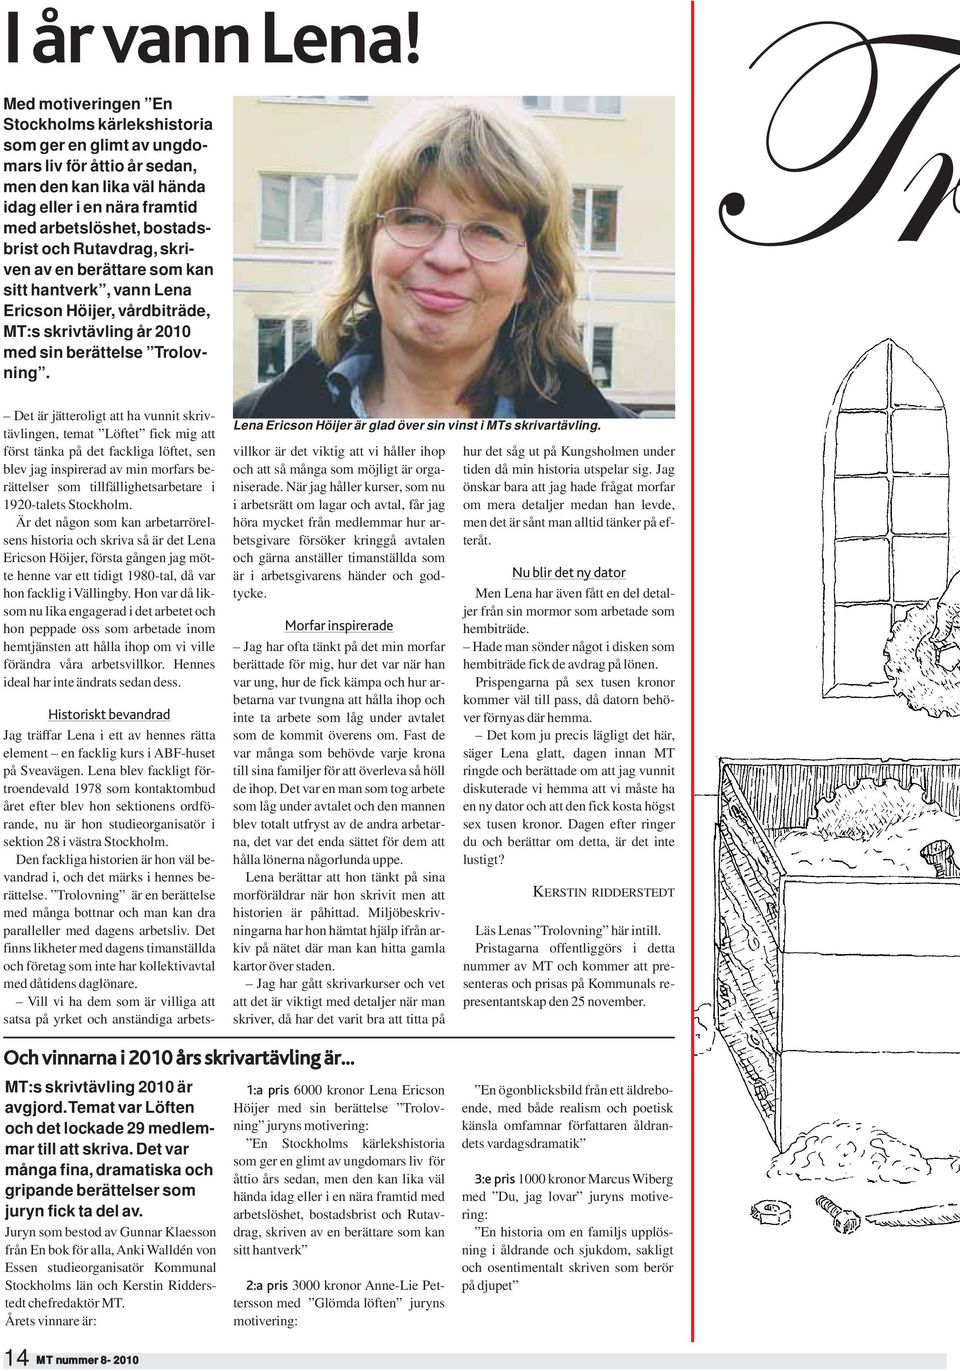 Rutavdrag, skriven av en berättare som kan sitt hantverk, vann Lena Ericson Höijer, vårdbiträde, MT:s skrivtävling år 2010 med sin berättelse Trolovning.